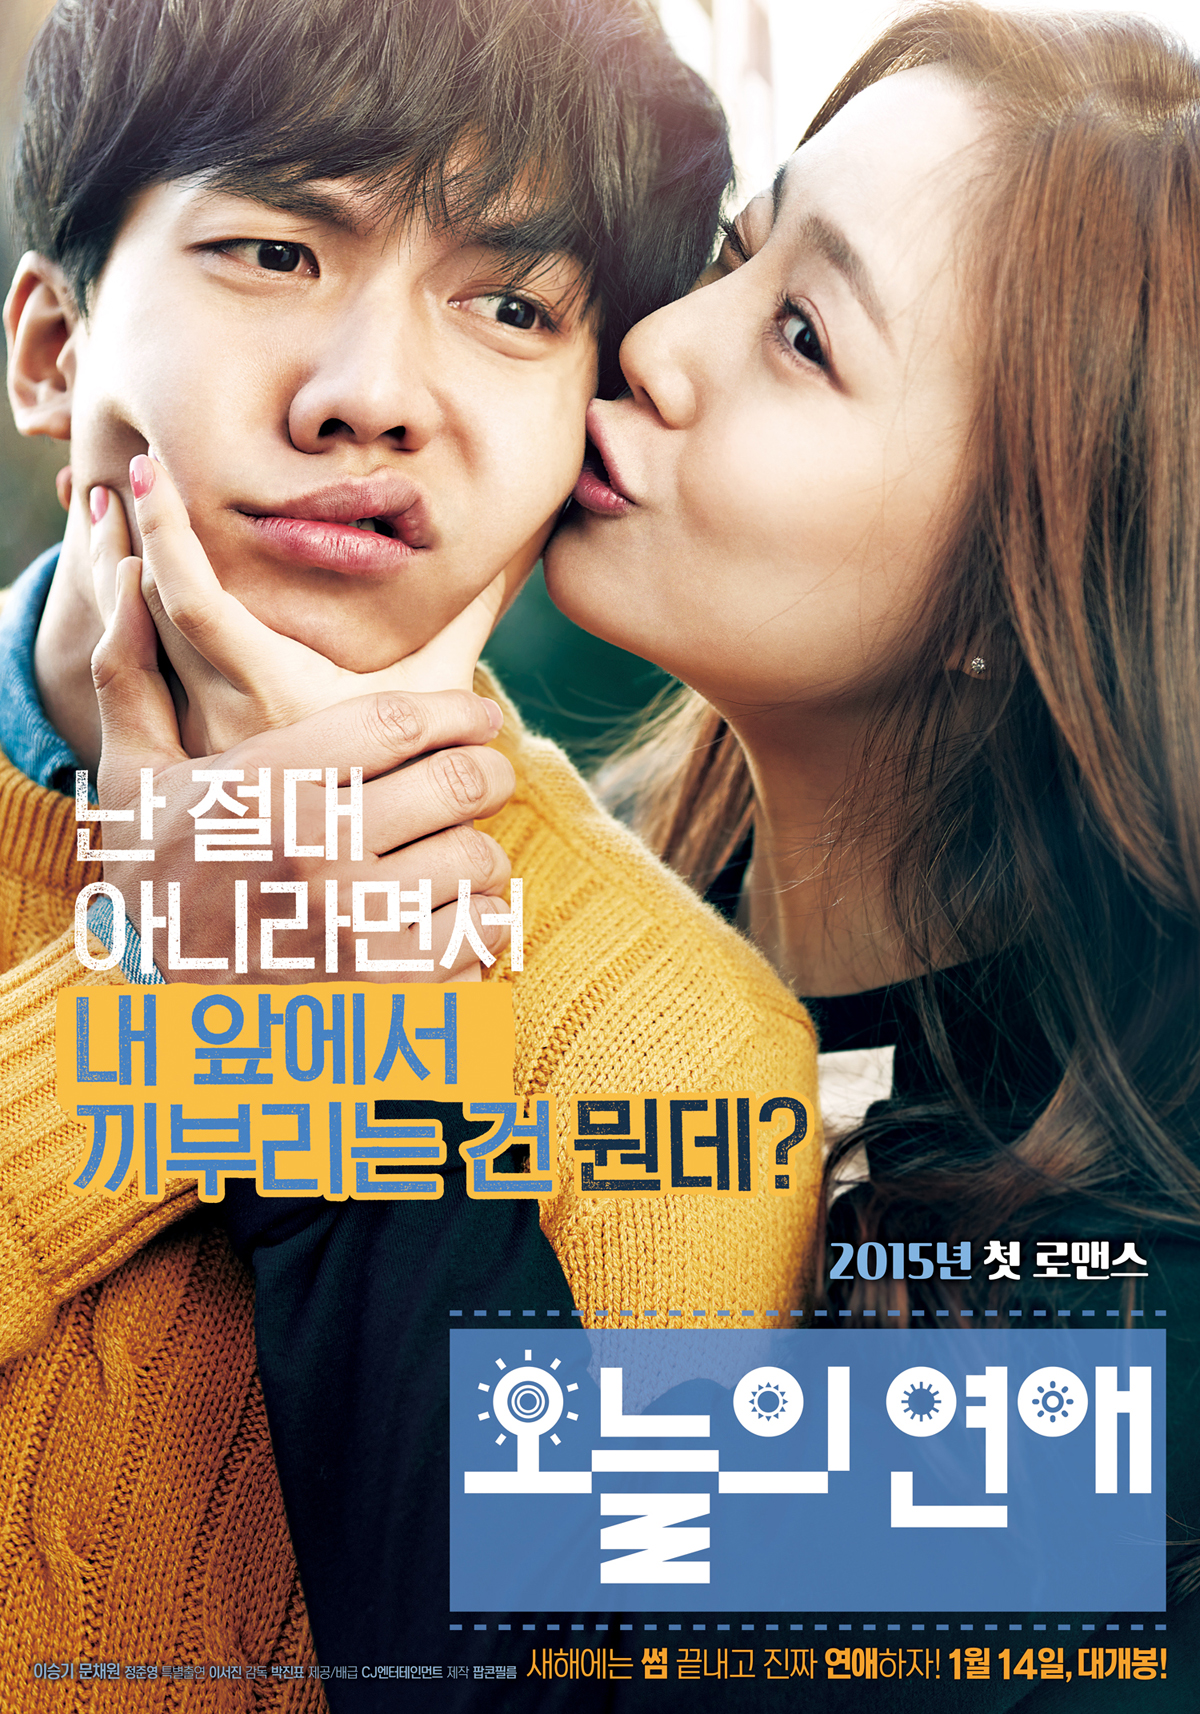 movie in love Korean